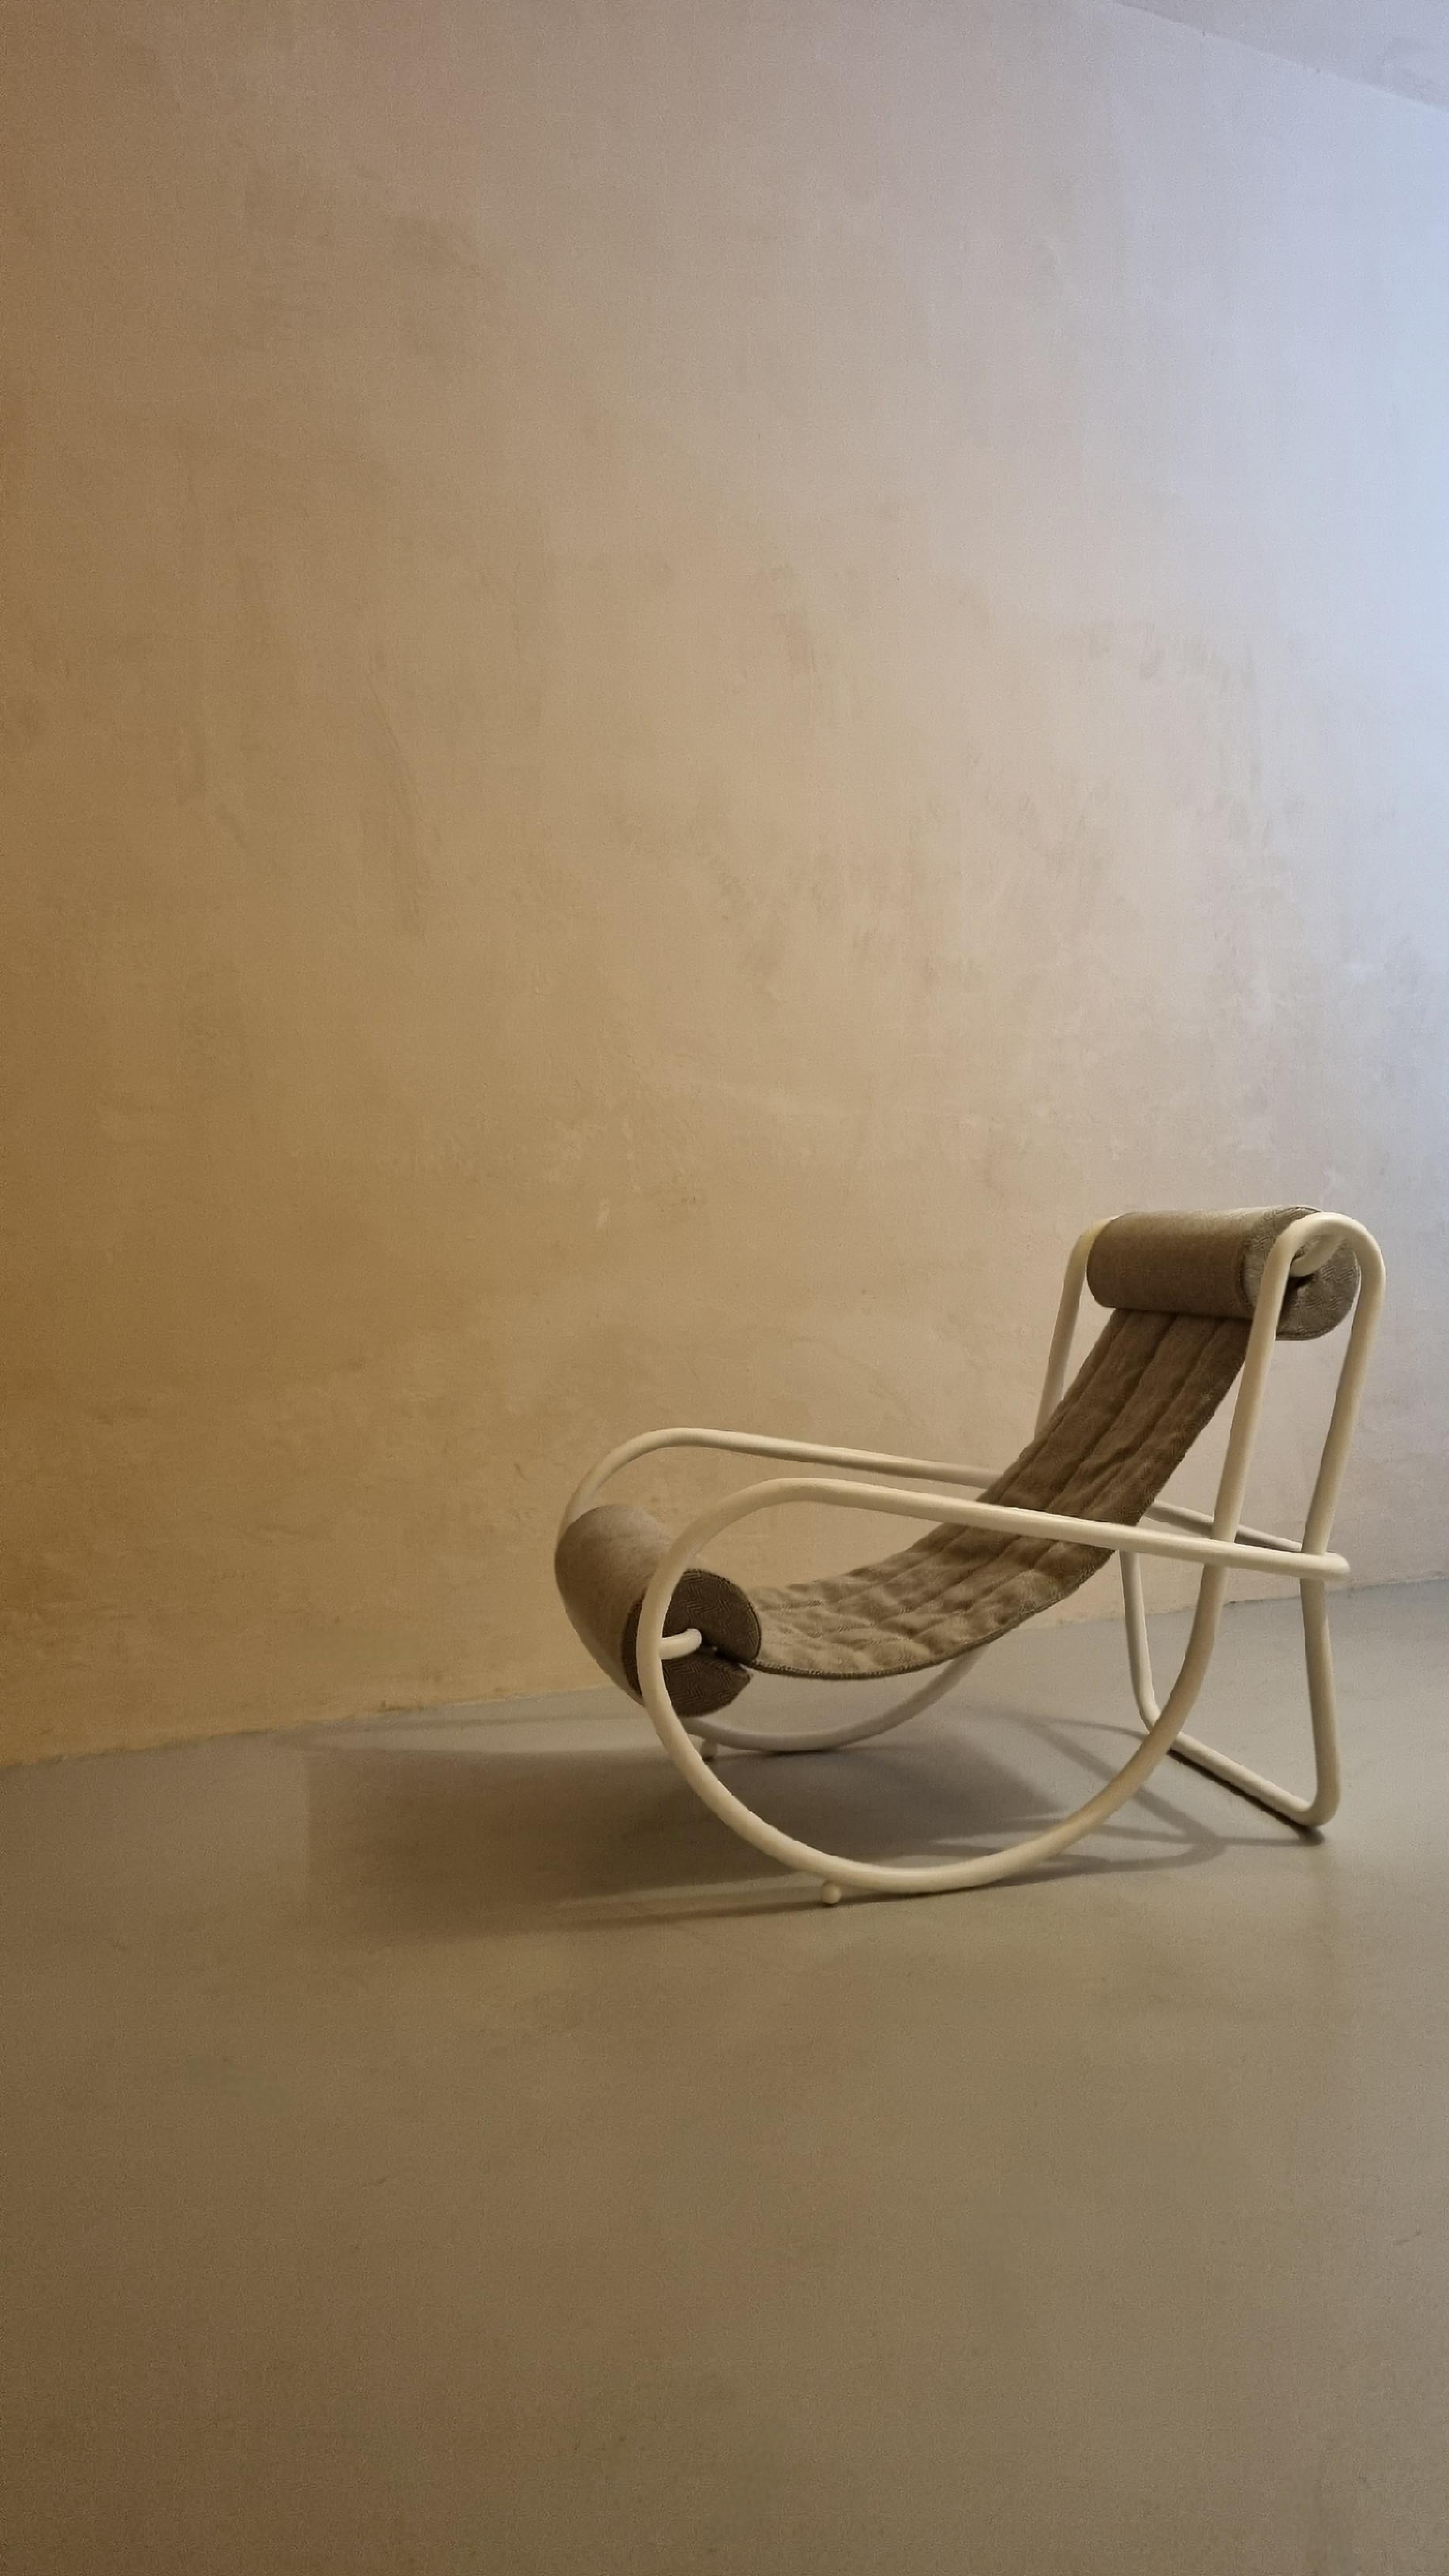 Locus Solus Sessel, entworfen von Gae Aulenti für Poltronova 1964.
Eine erste Produktion in ausgezeichnetem Zustand, restauriert.
Struktur aus lackiertem Metall, Leinen, Polyurethan-Polsterung.
Einige Jahre nach der Veröffentlichung des Buches von